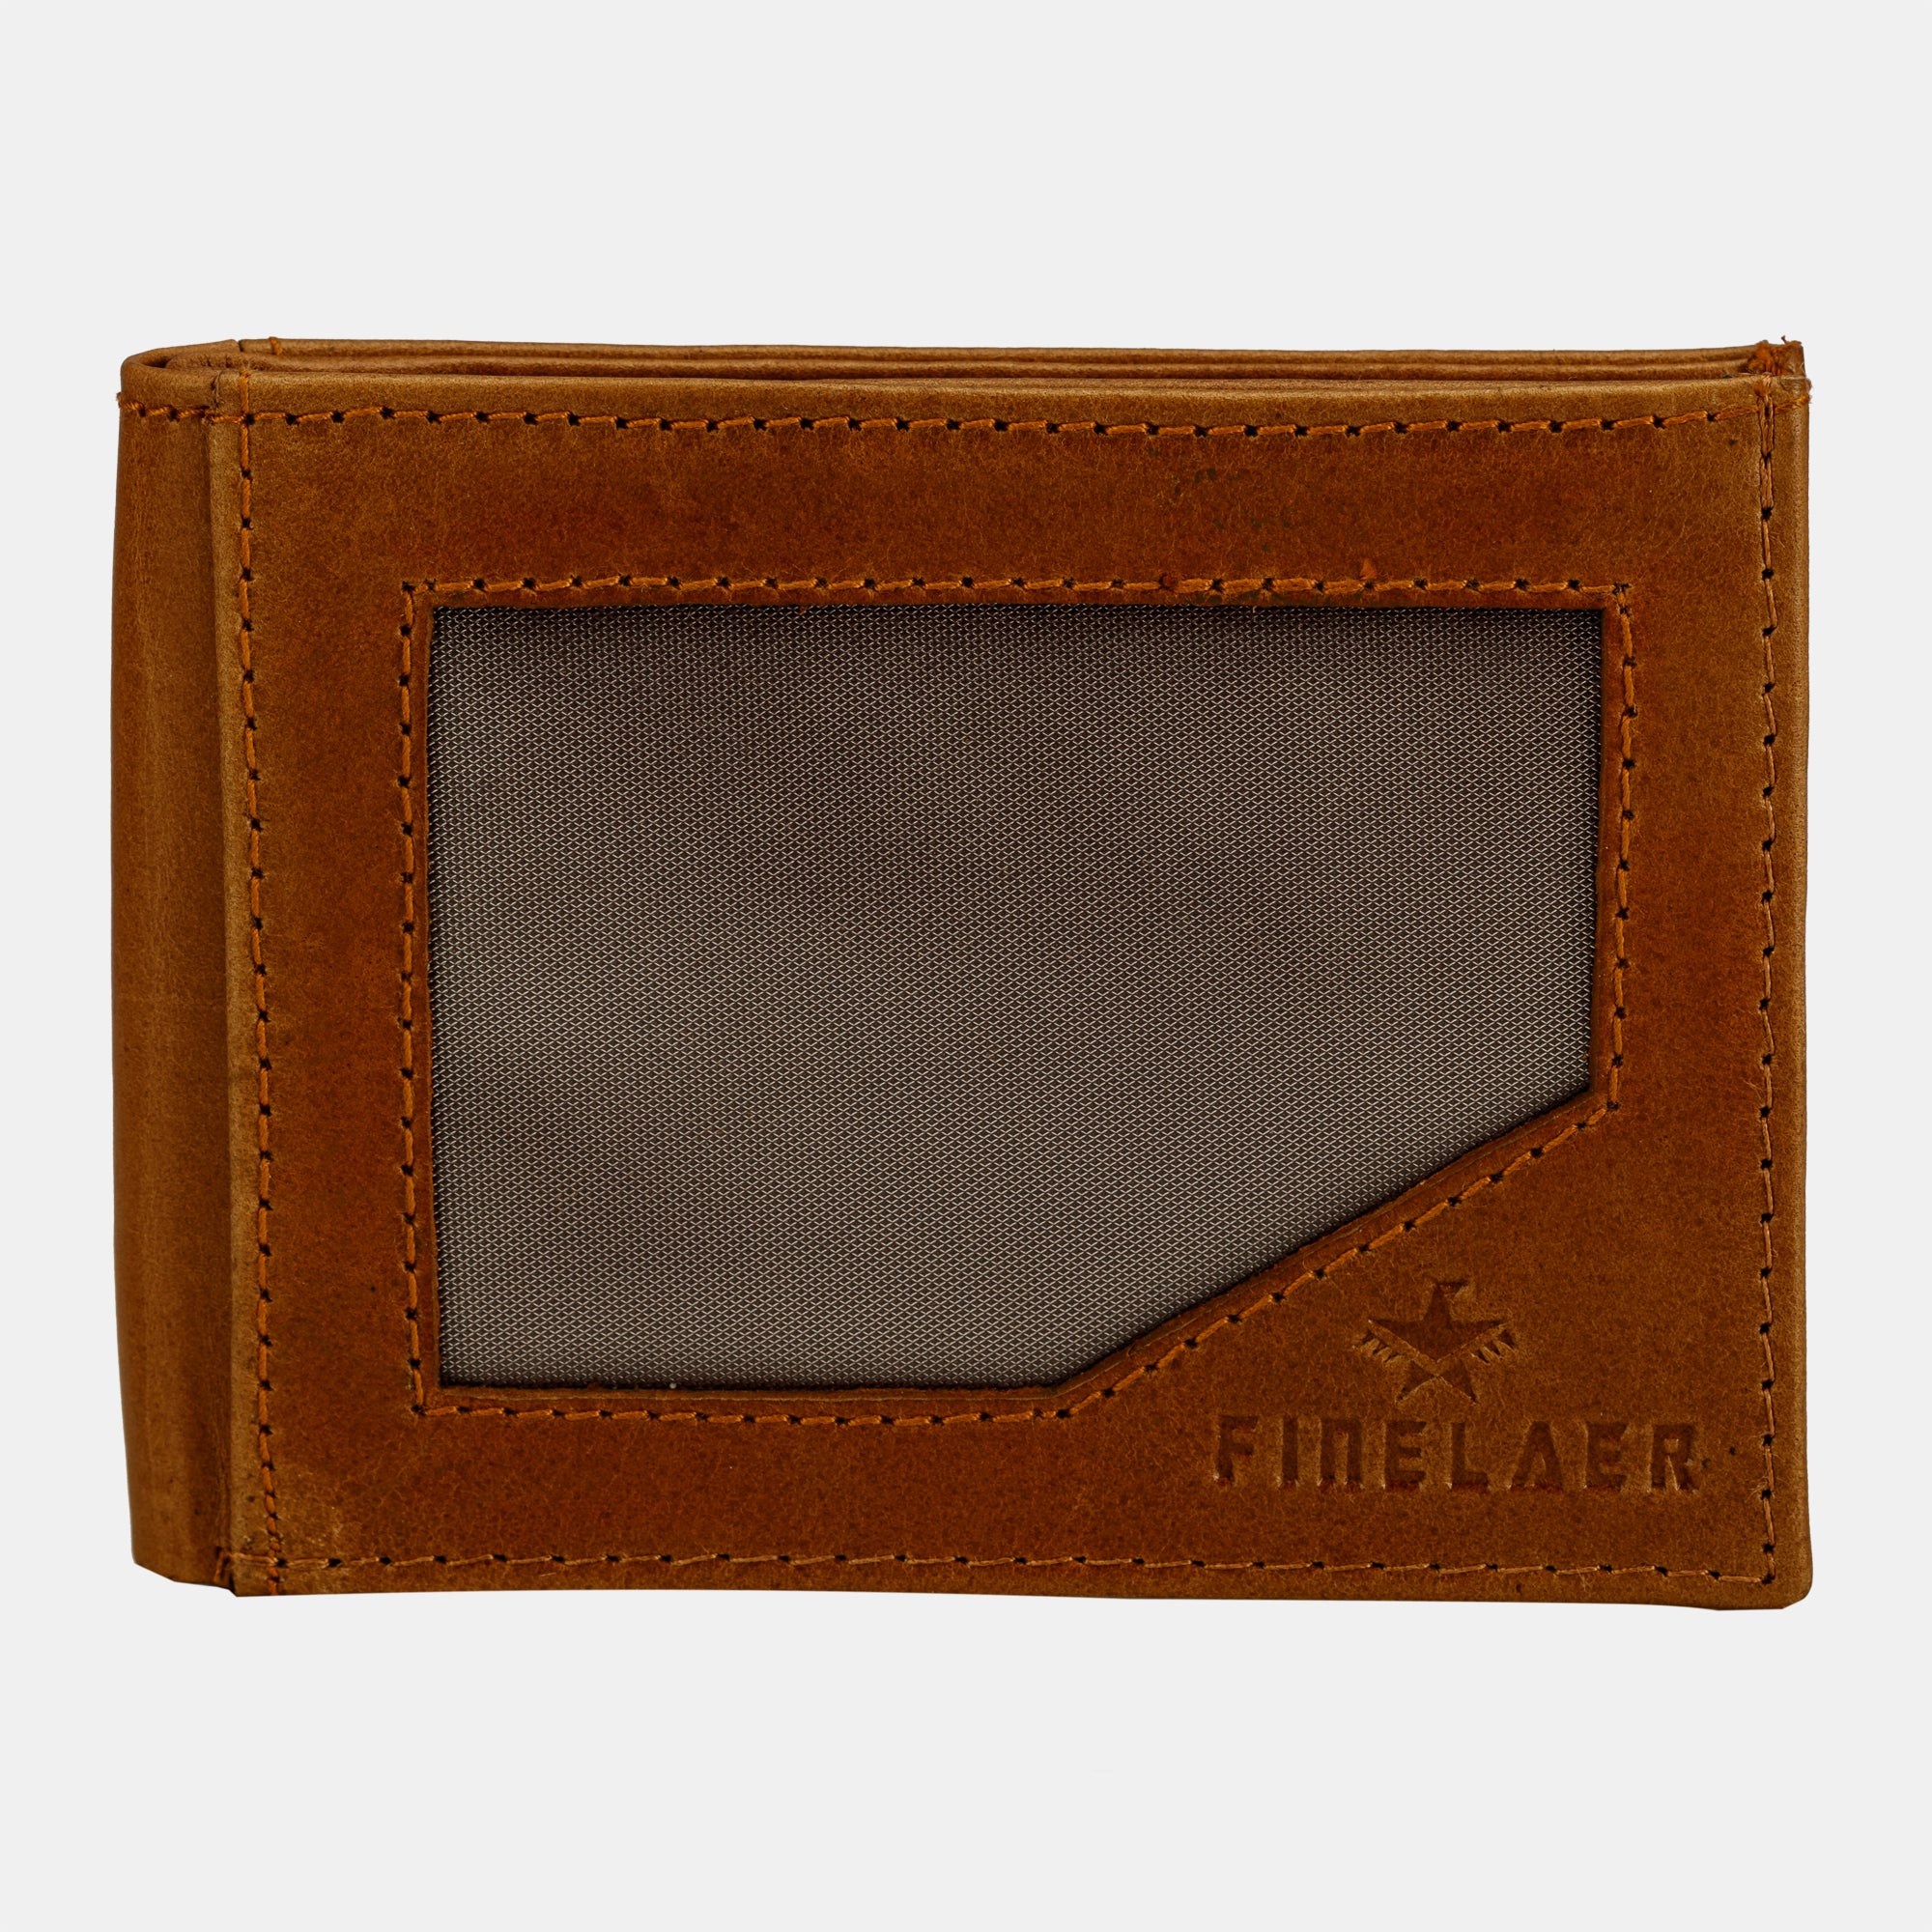 Leather Slim Front Pocket Wallets For Men – Finelaer